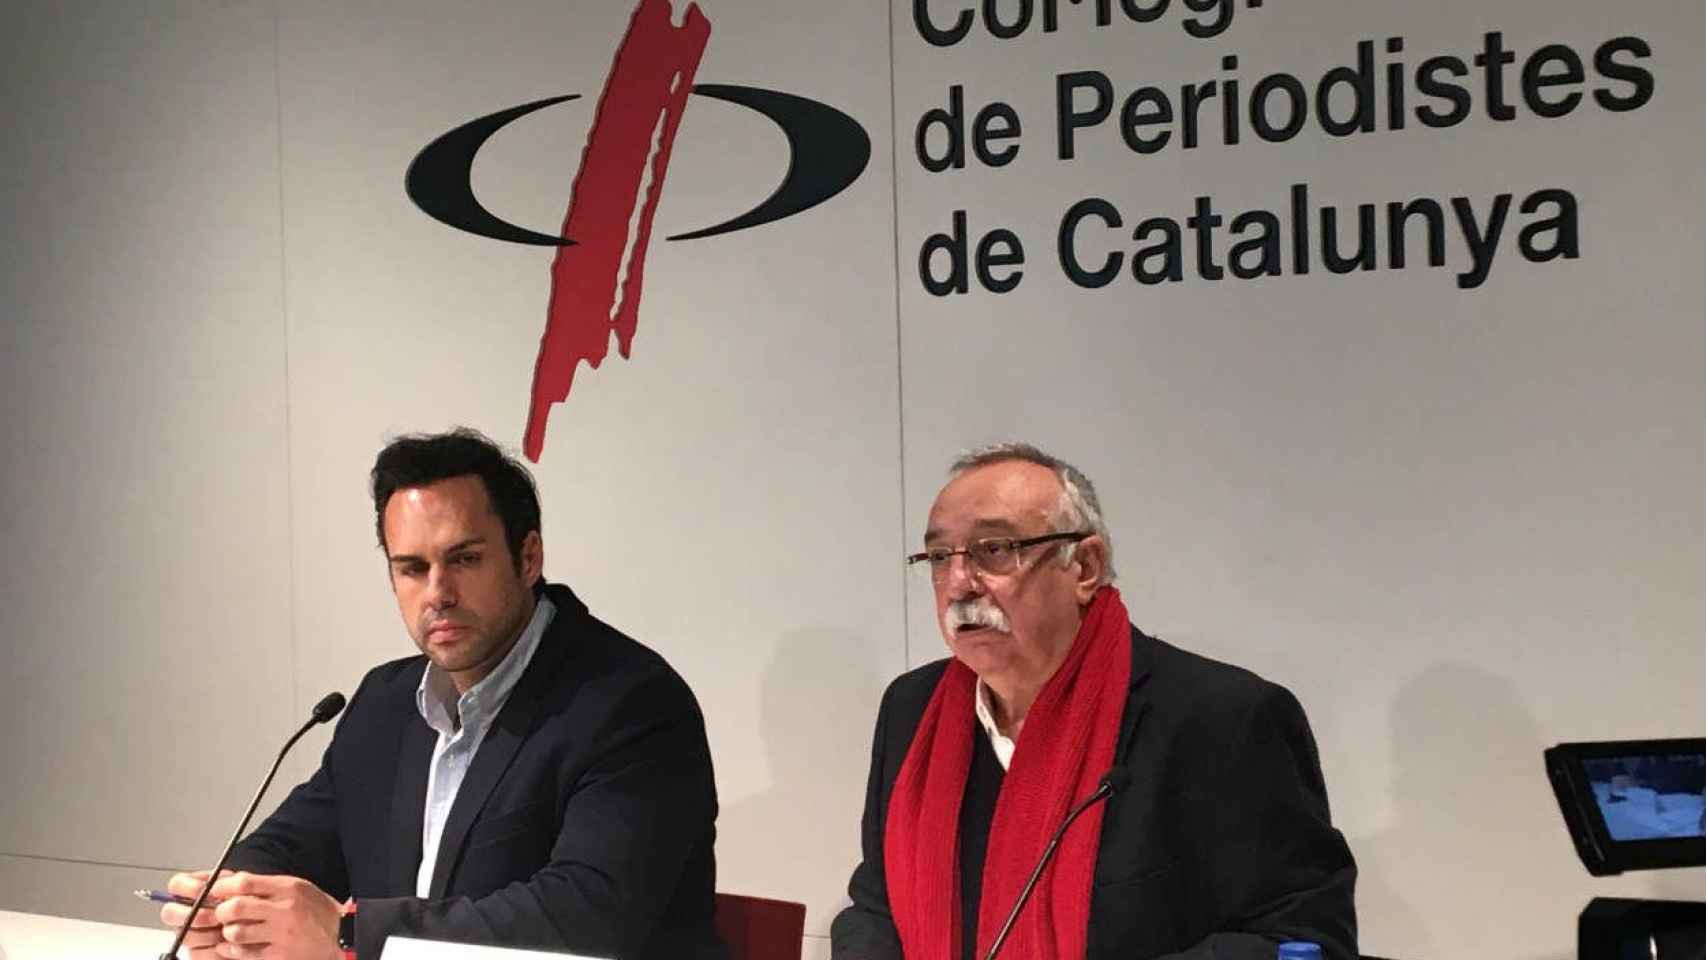 Eduardo Martin y Josep Maria Goñi, dirigentes de Unauto / CR